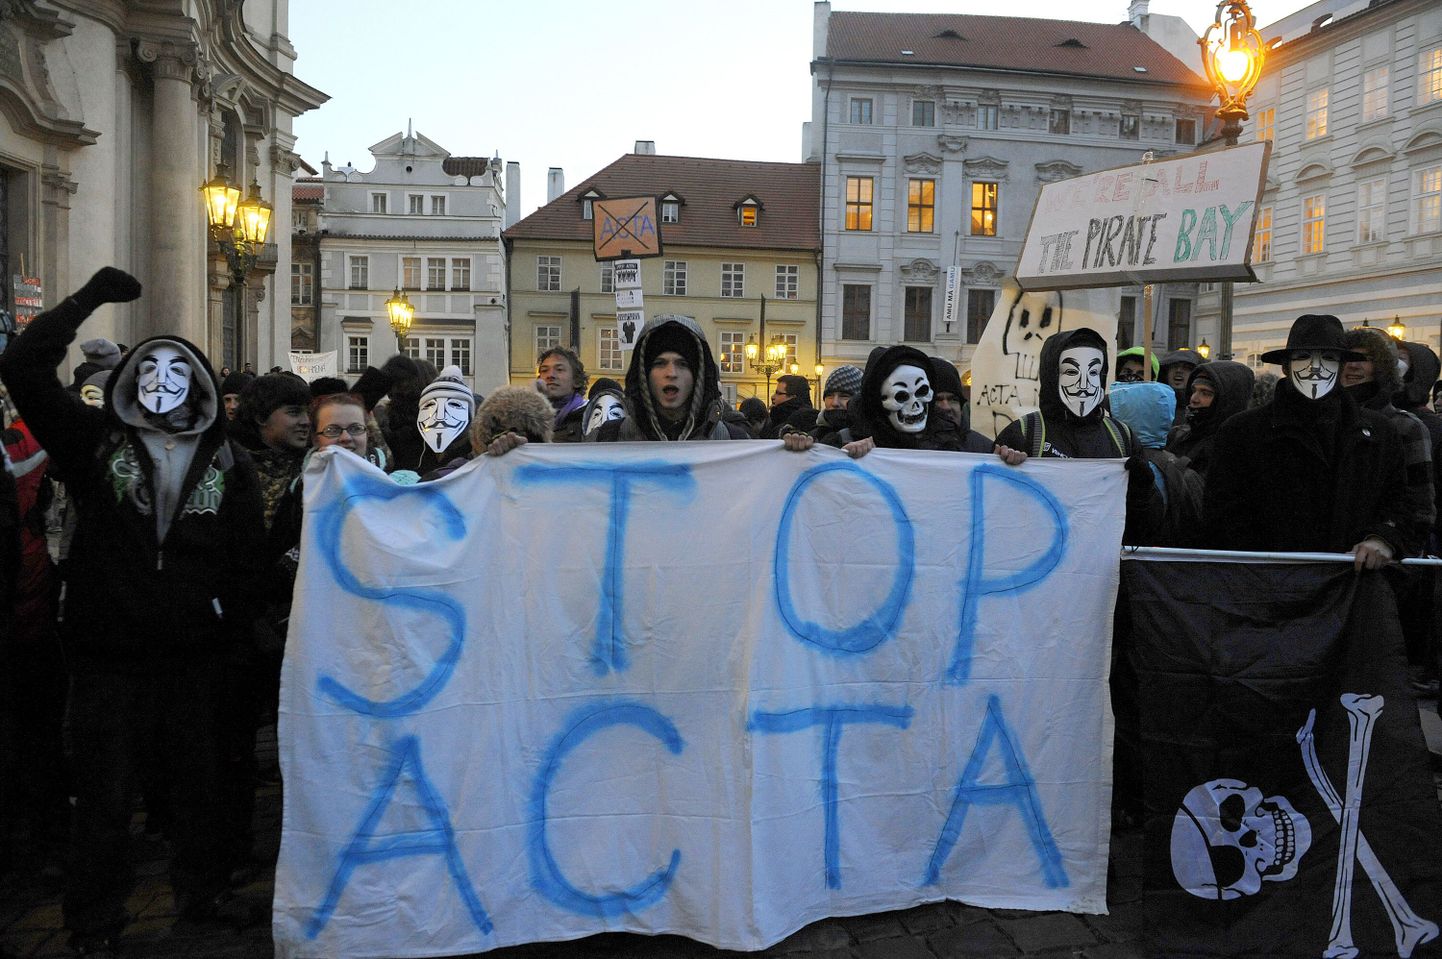 ACTA vastane meeleavaldus Tšehhis.